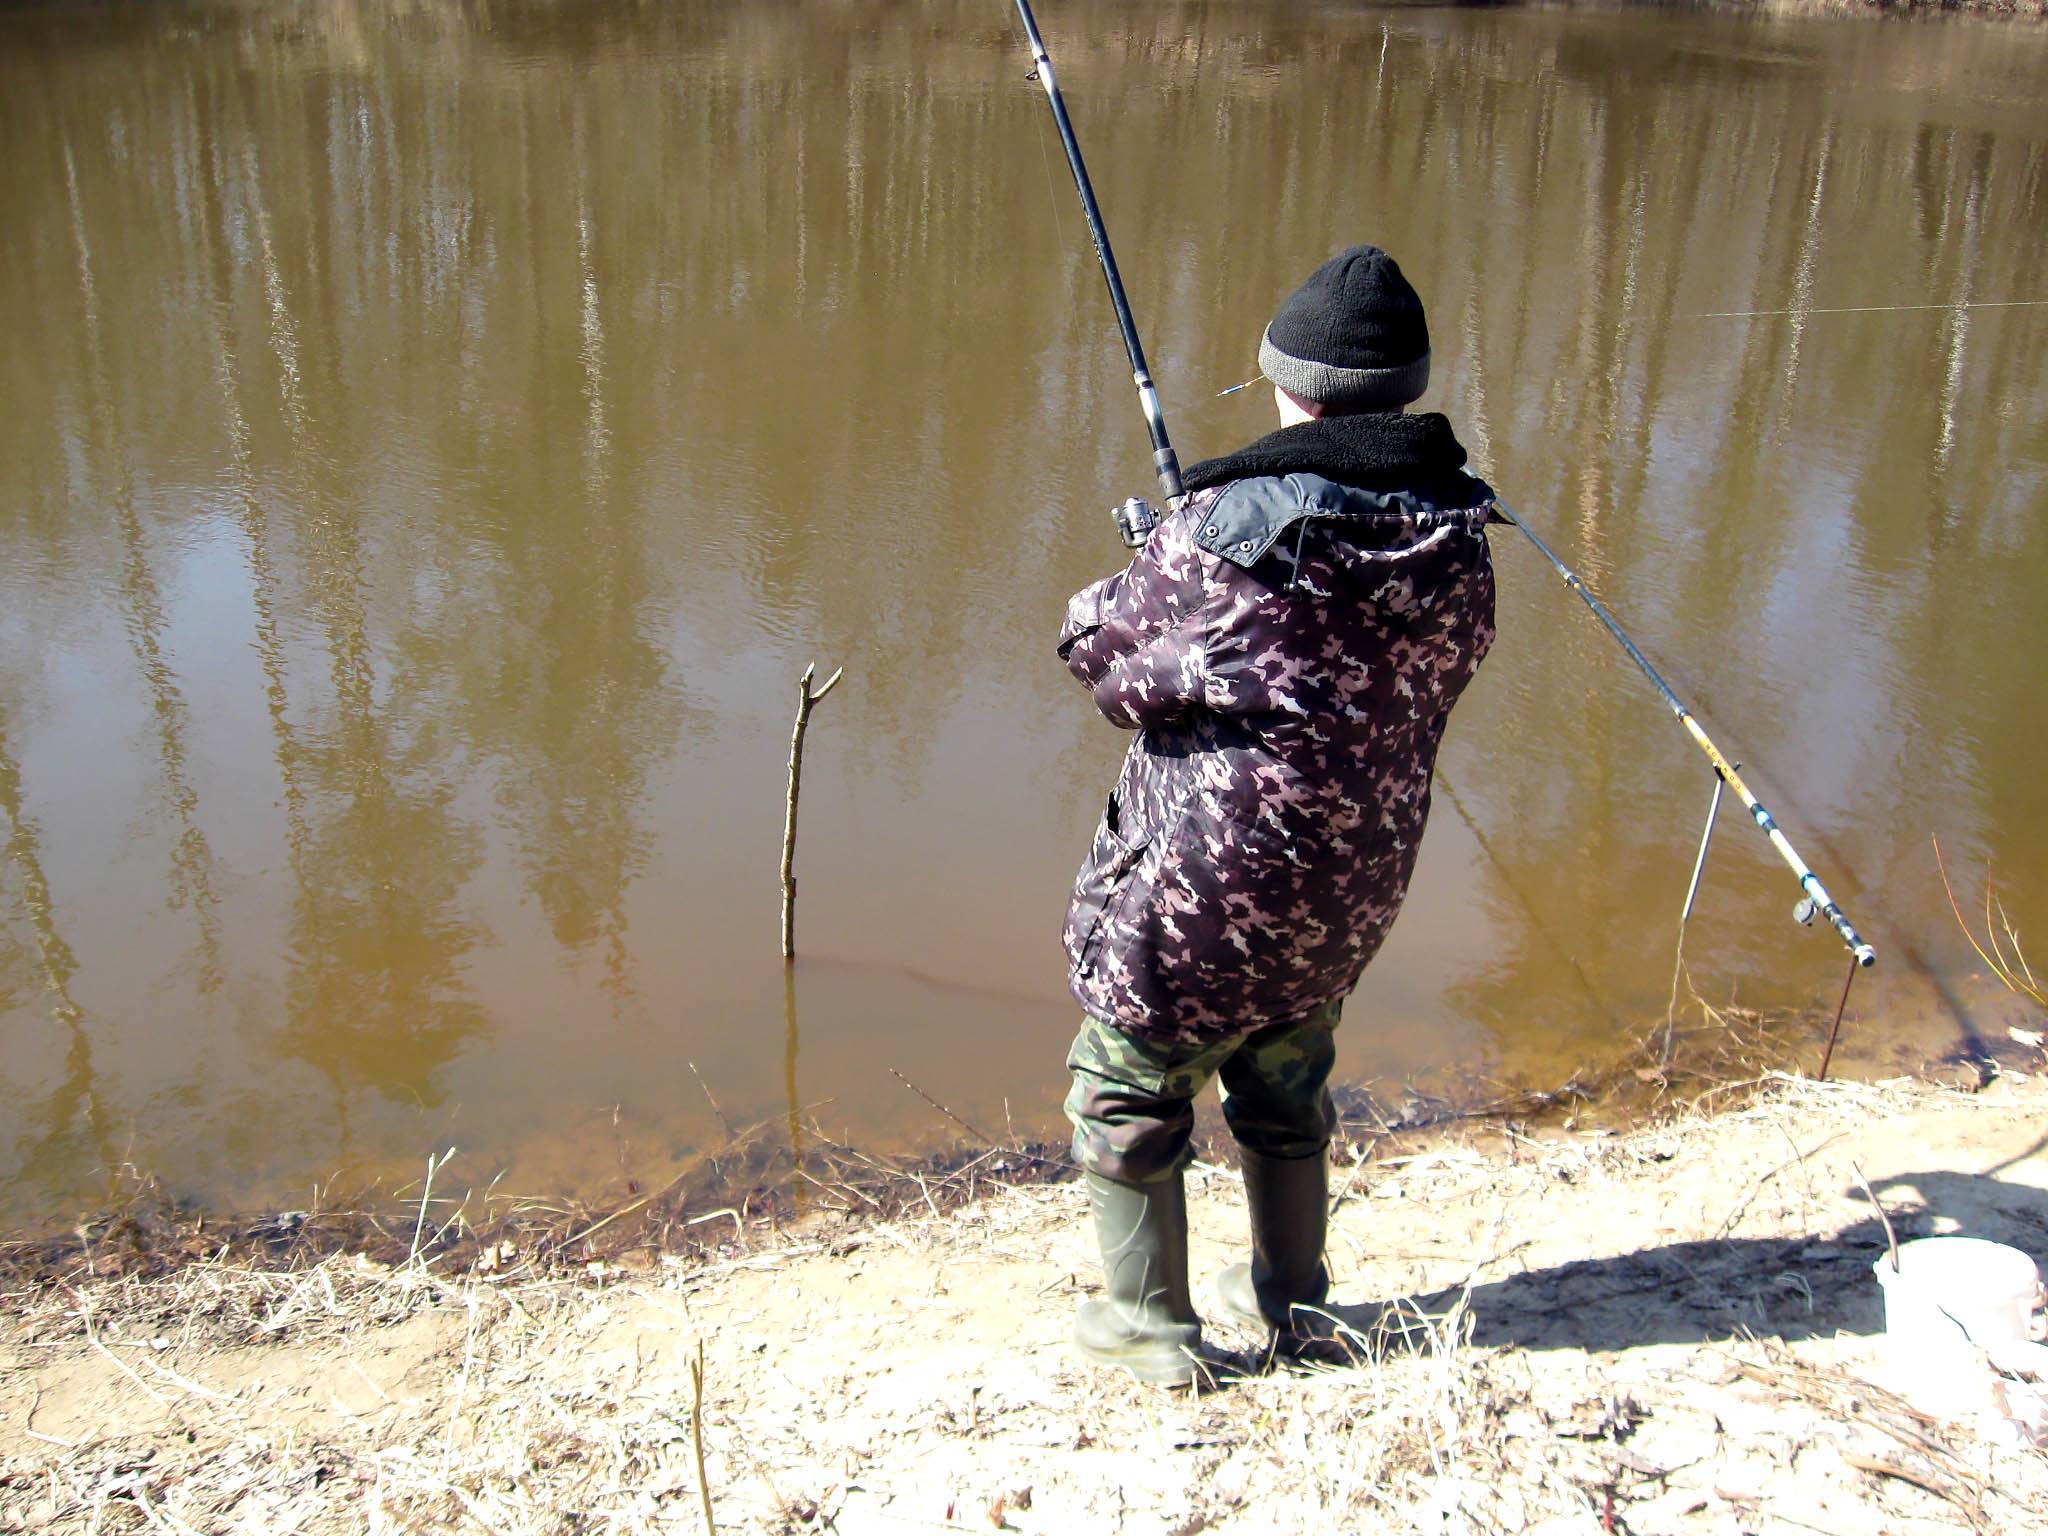 Рыбалка на спиннинг весной: когда можно начинать весеннюю ловлю после запрета?